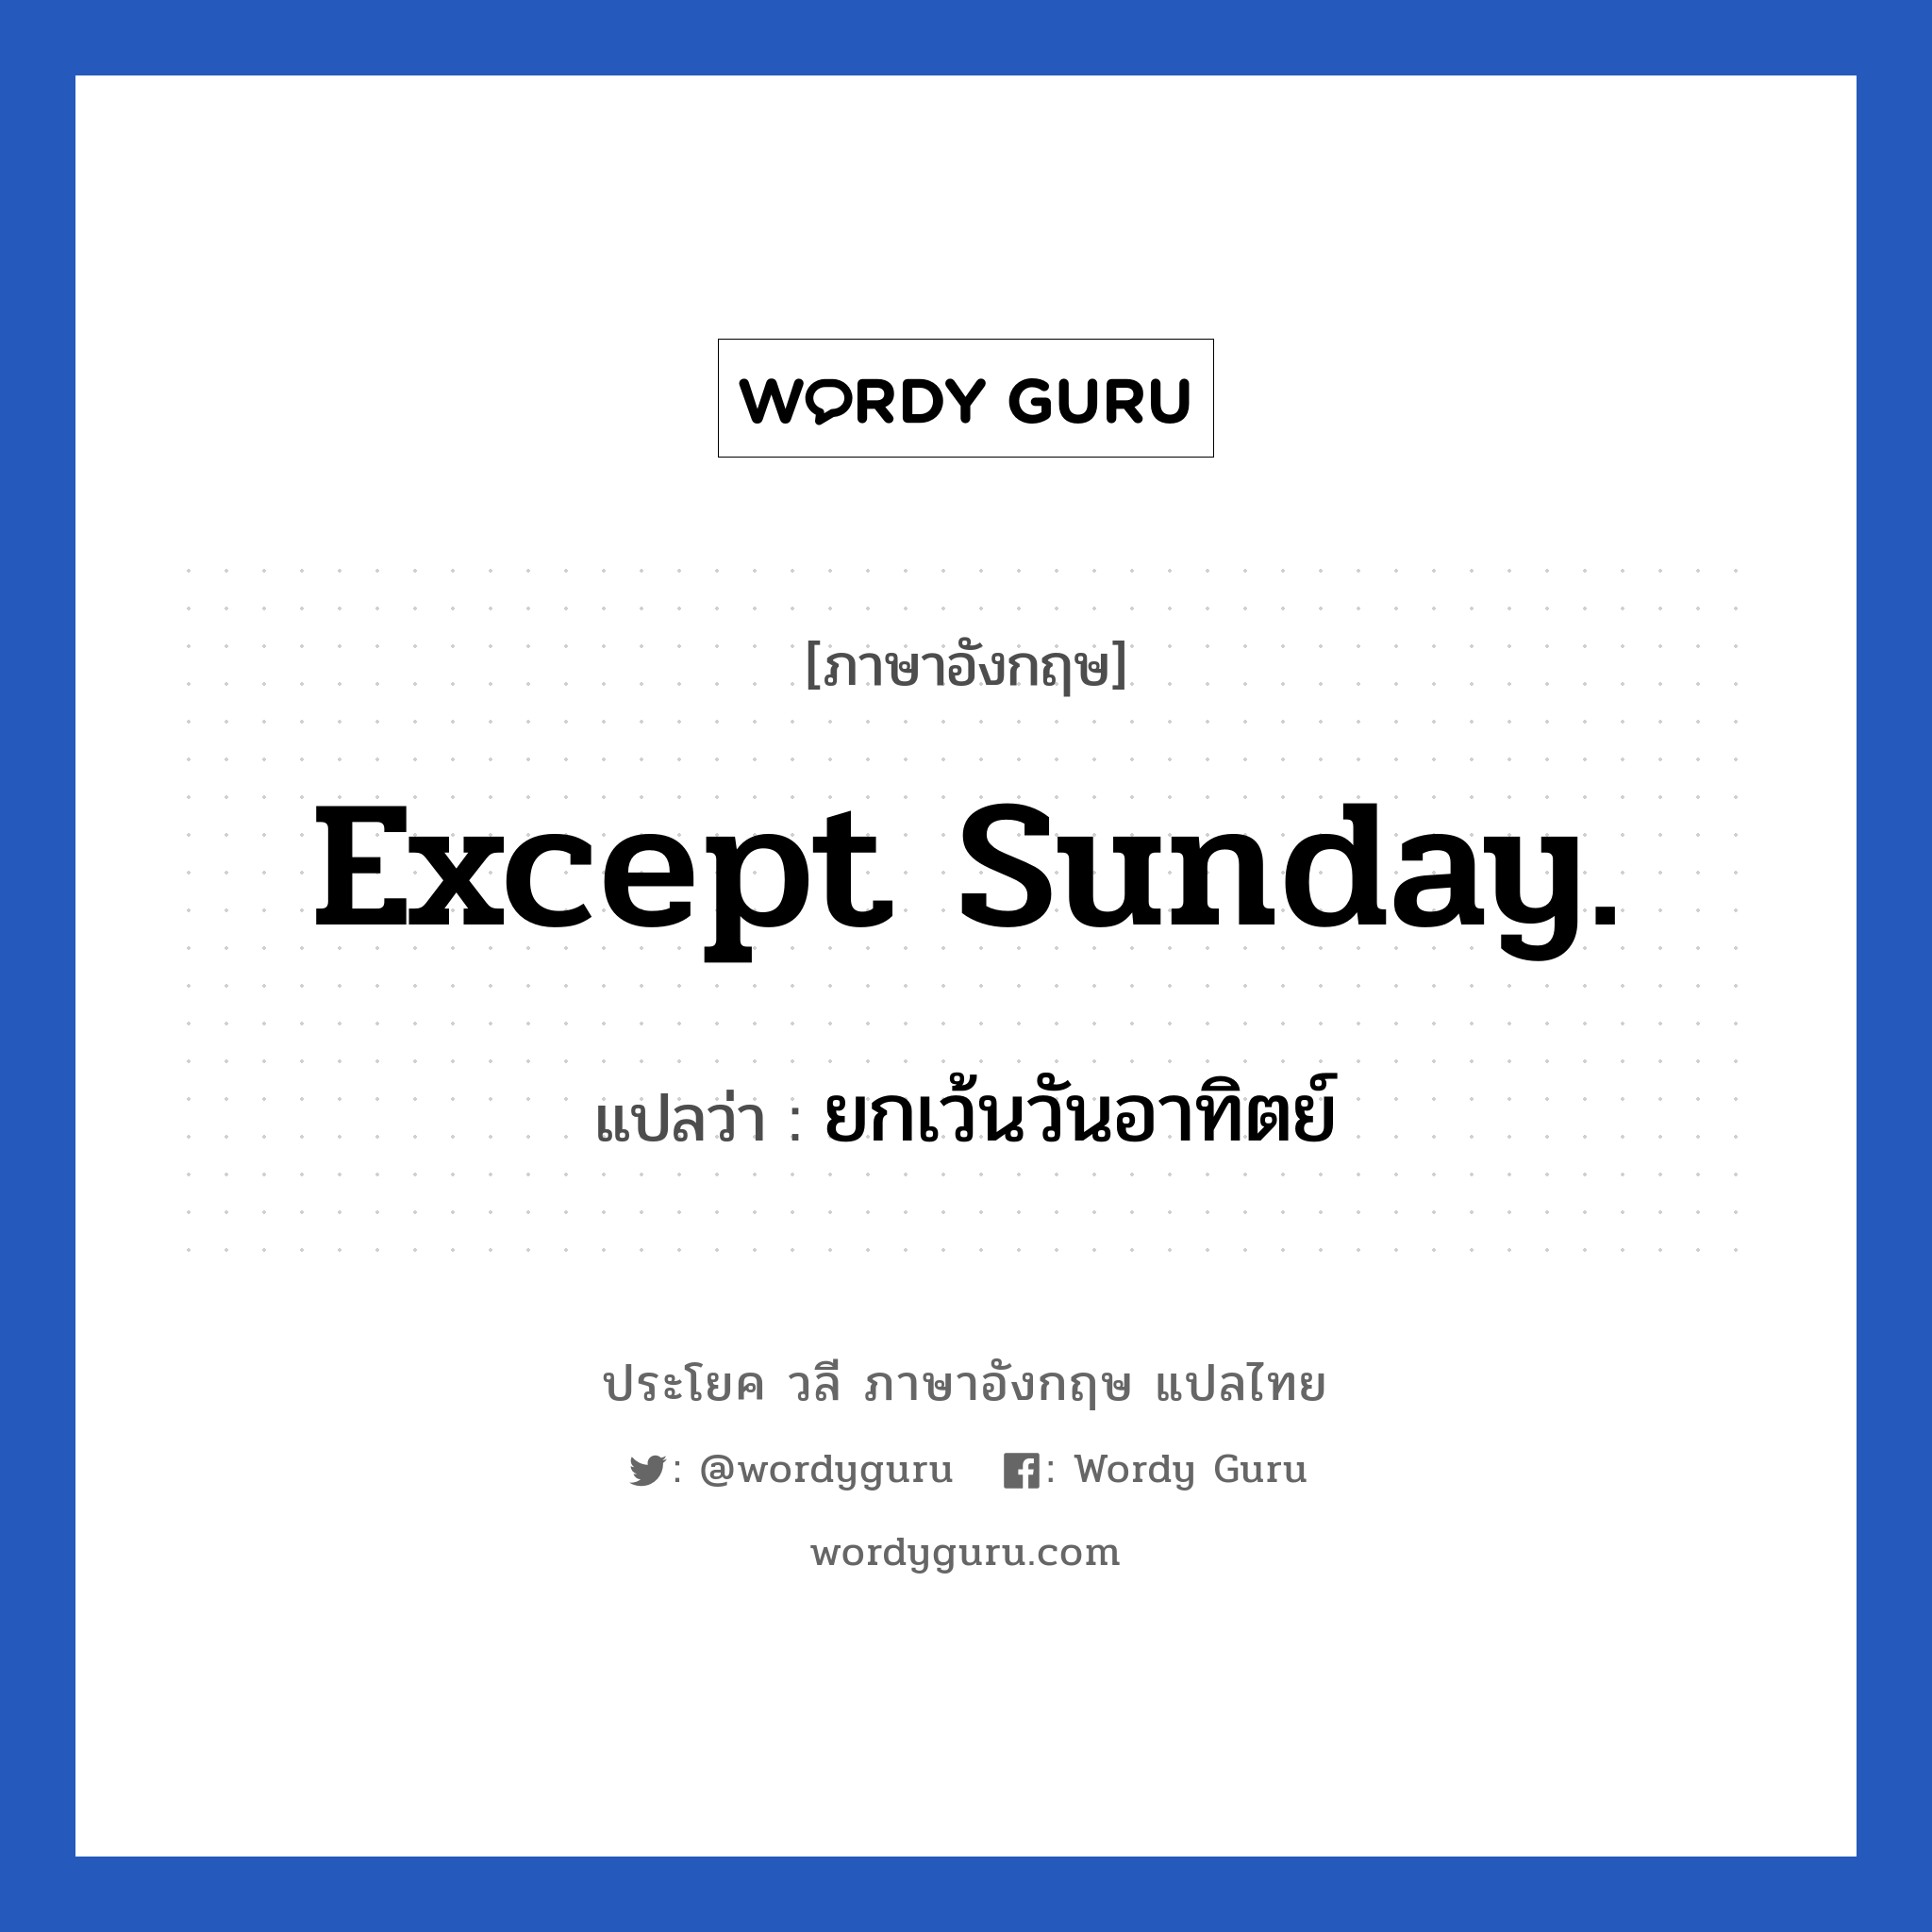 ยกเว้นวันอาทิตย์ ภาษาอังกฤษ?, วลีภาษาอังกฤษ ยกเว้นวันอาทิตย์ แปลว่า Except Sunday.